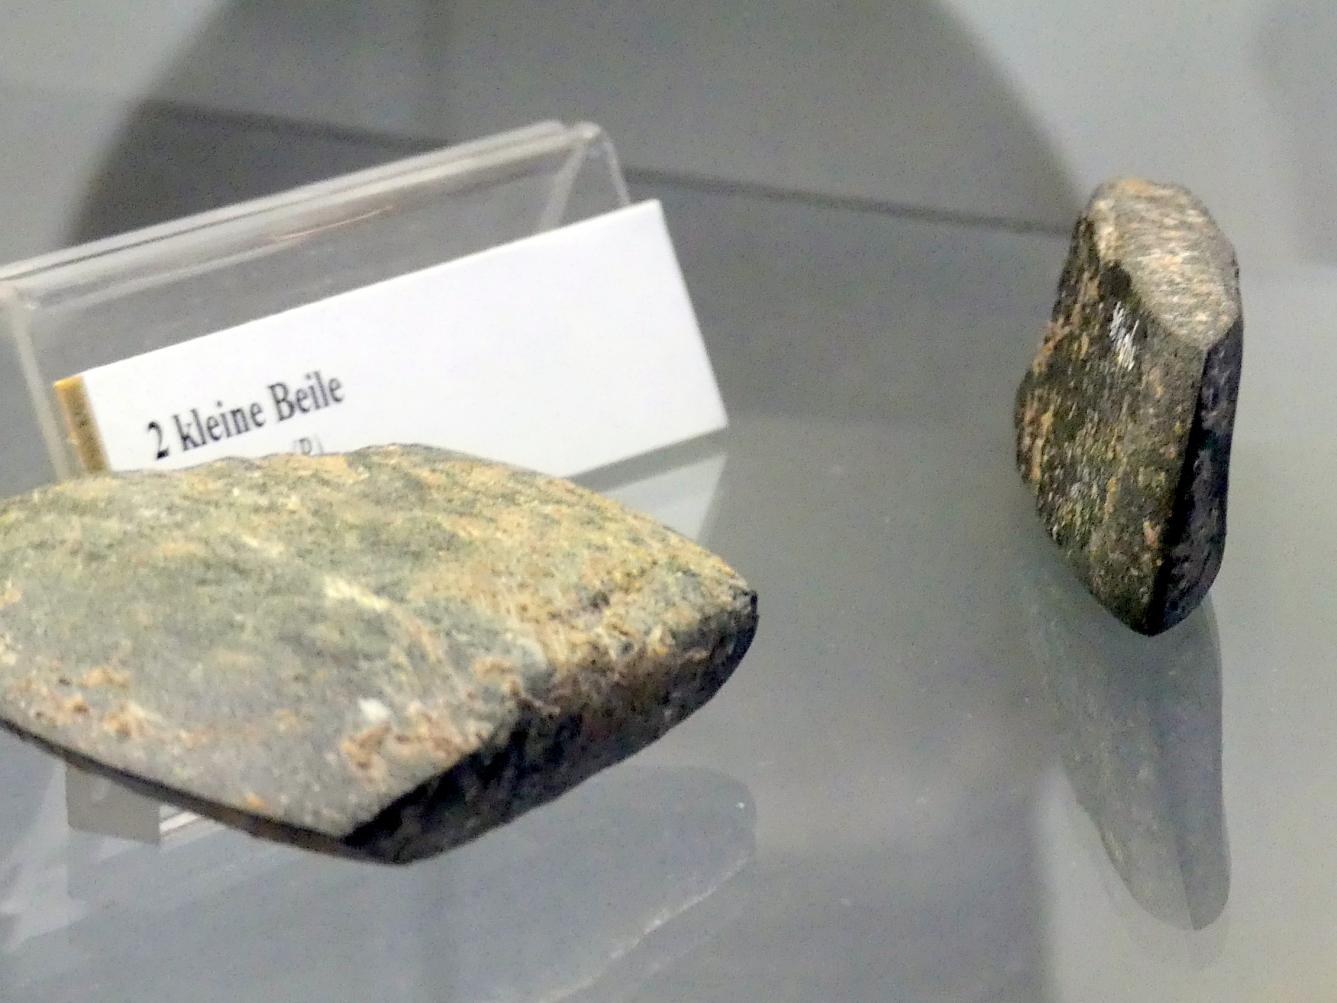 2 kleine Beile, Endneolithikum, 2800 - 1700 v. Chr.